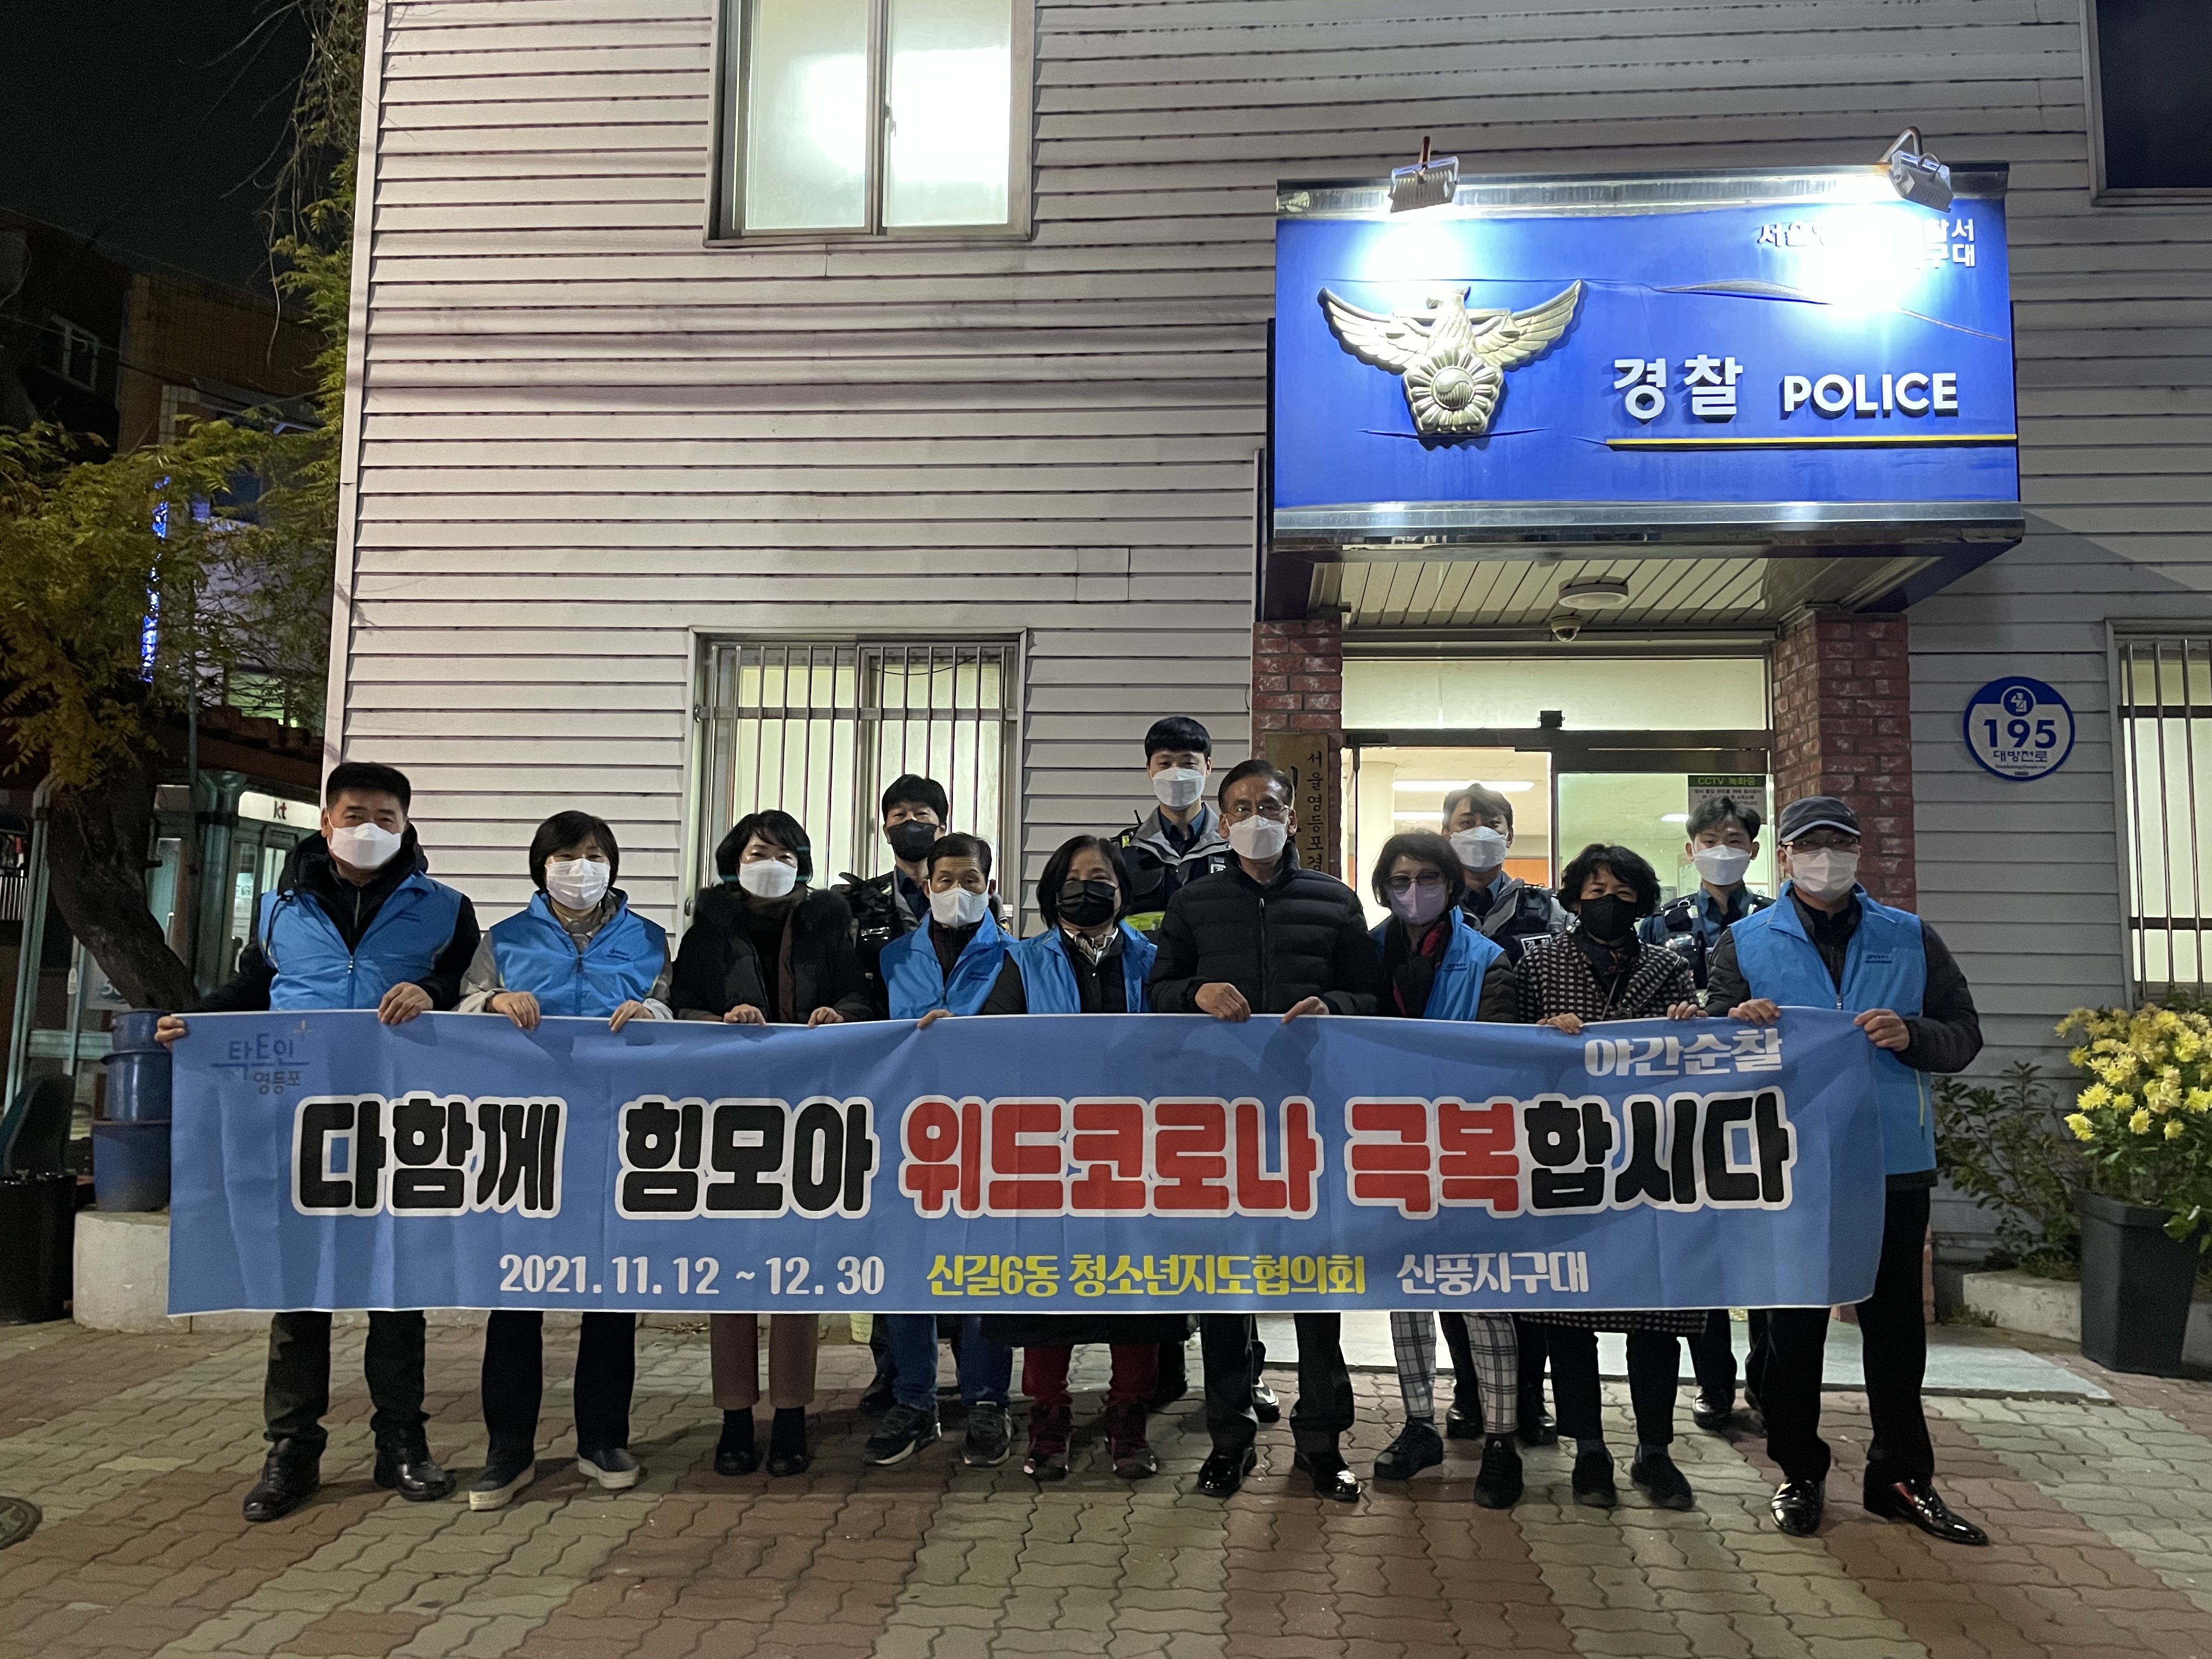 청소년지도협의회 & 신풍지구대 합동 야간 순찰 (21.11.29.) 사진